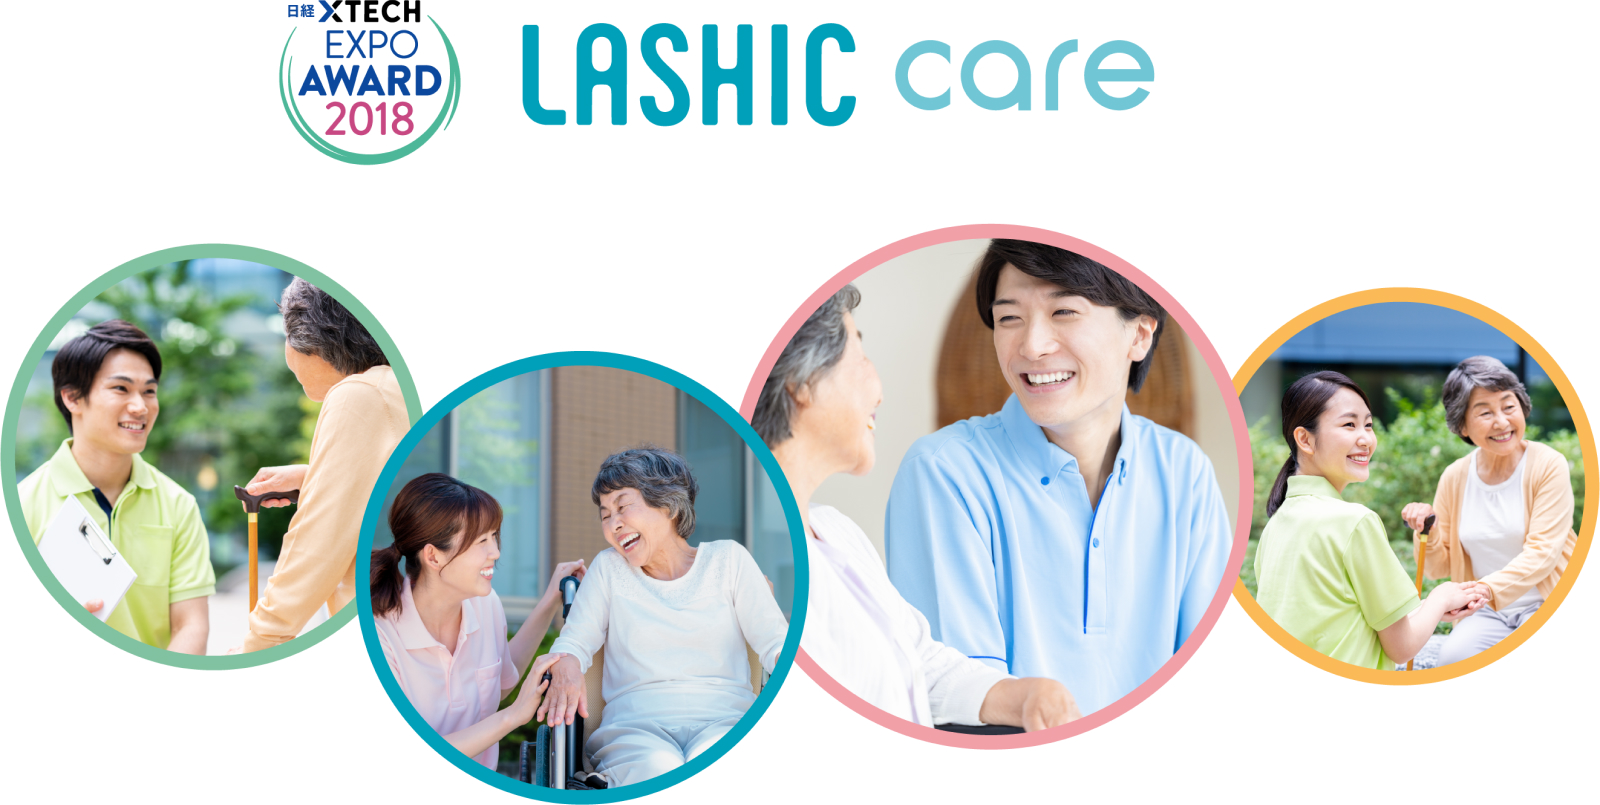 LASHIC-care